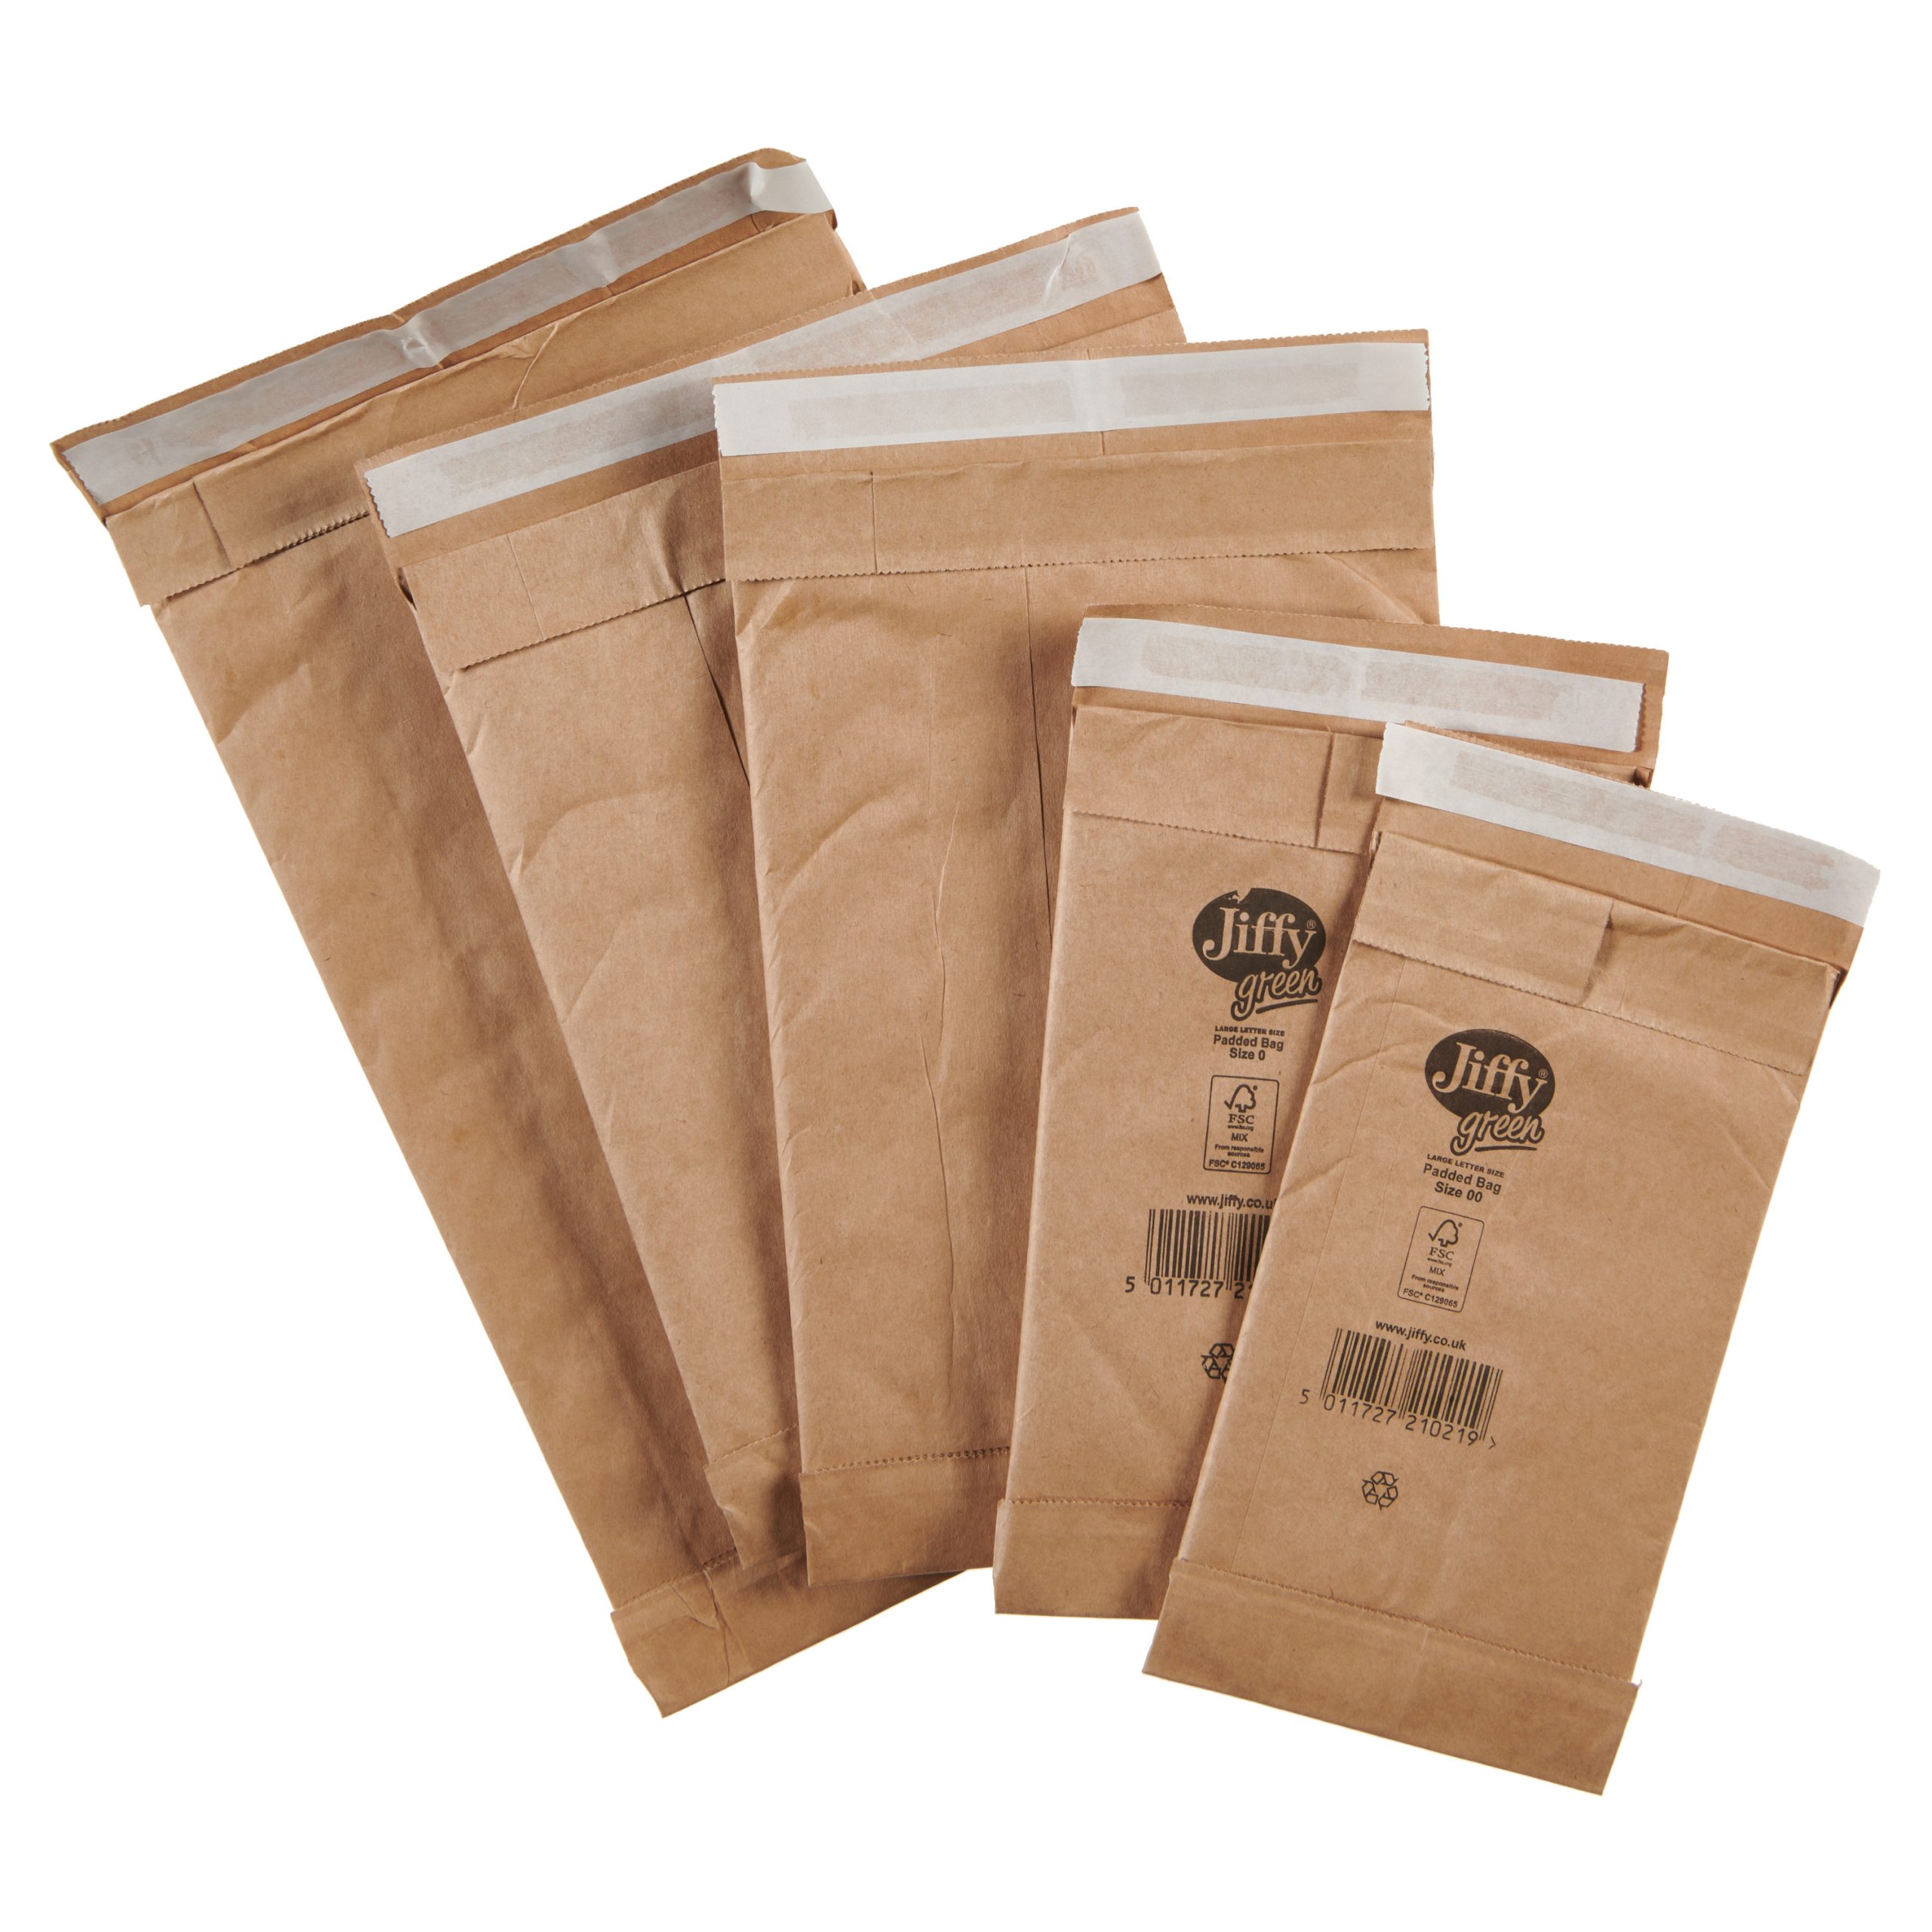 Af en toe viering Maryanne Jones Jiffy Green Padded Bags - Packaging Products Online